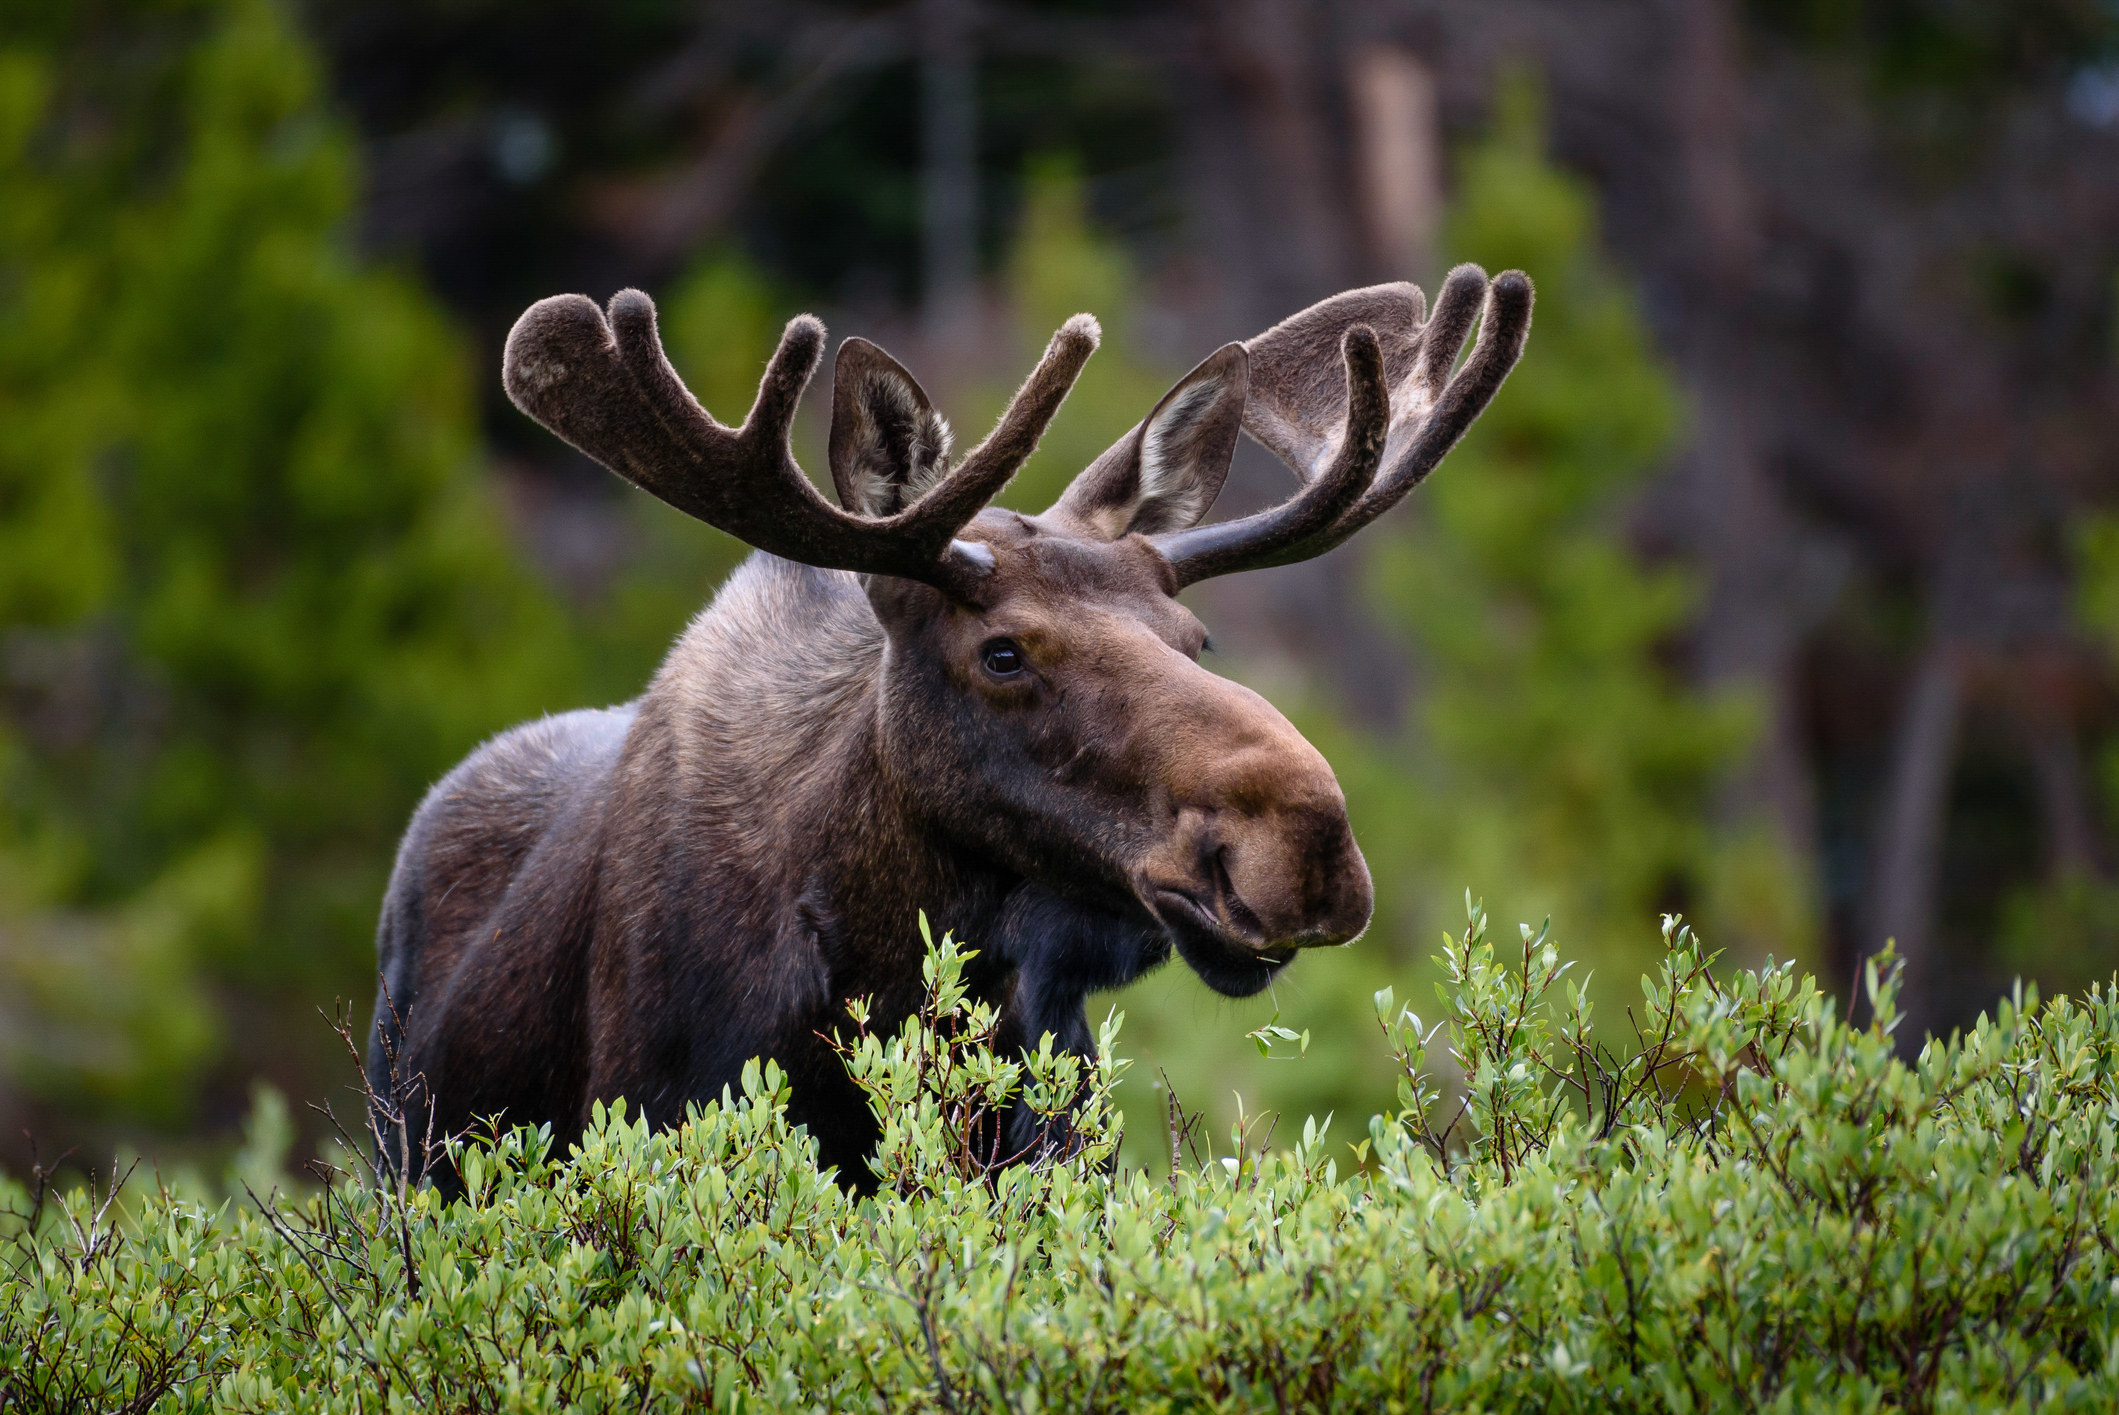 A moose in America